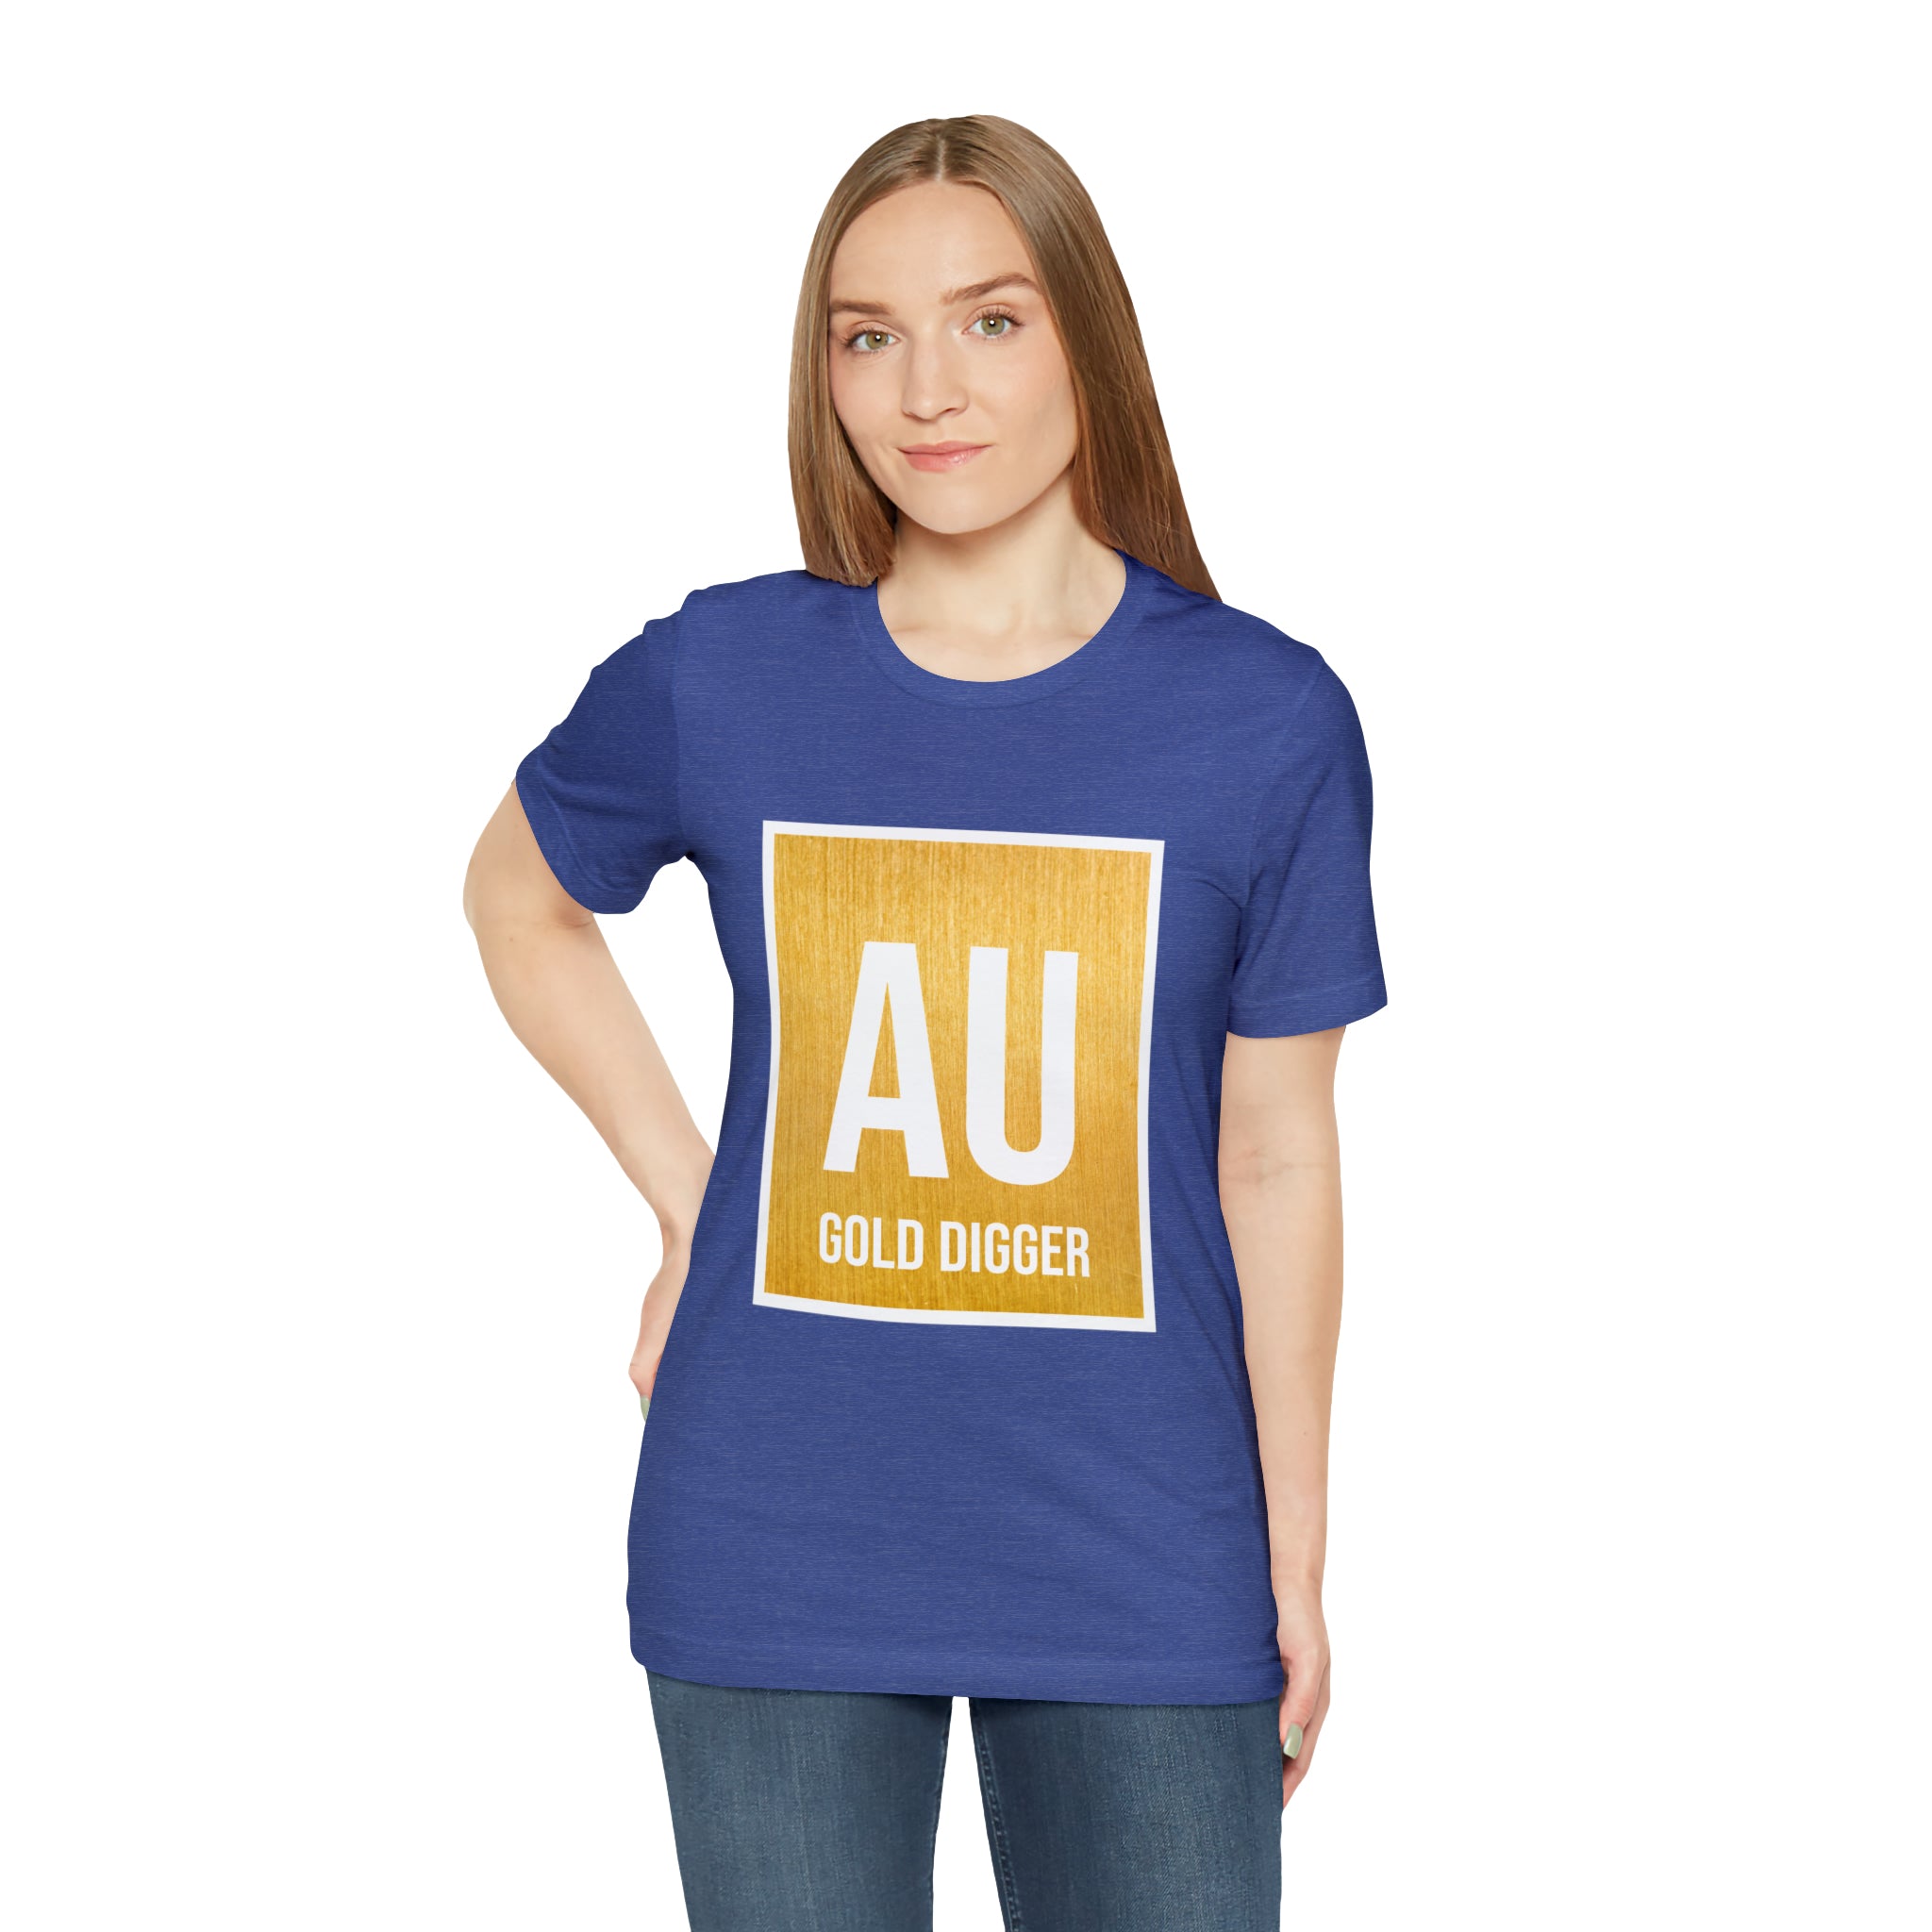 AU Gold digger T-Shirt